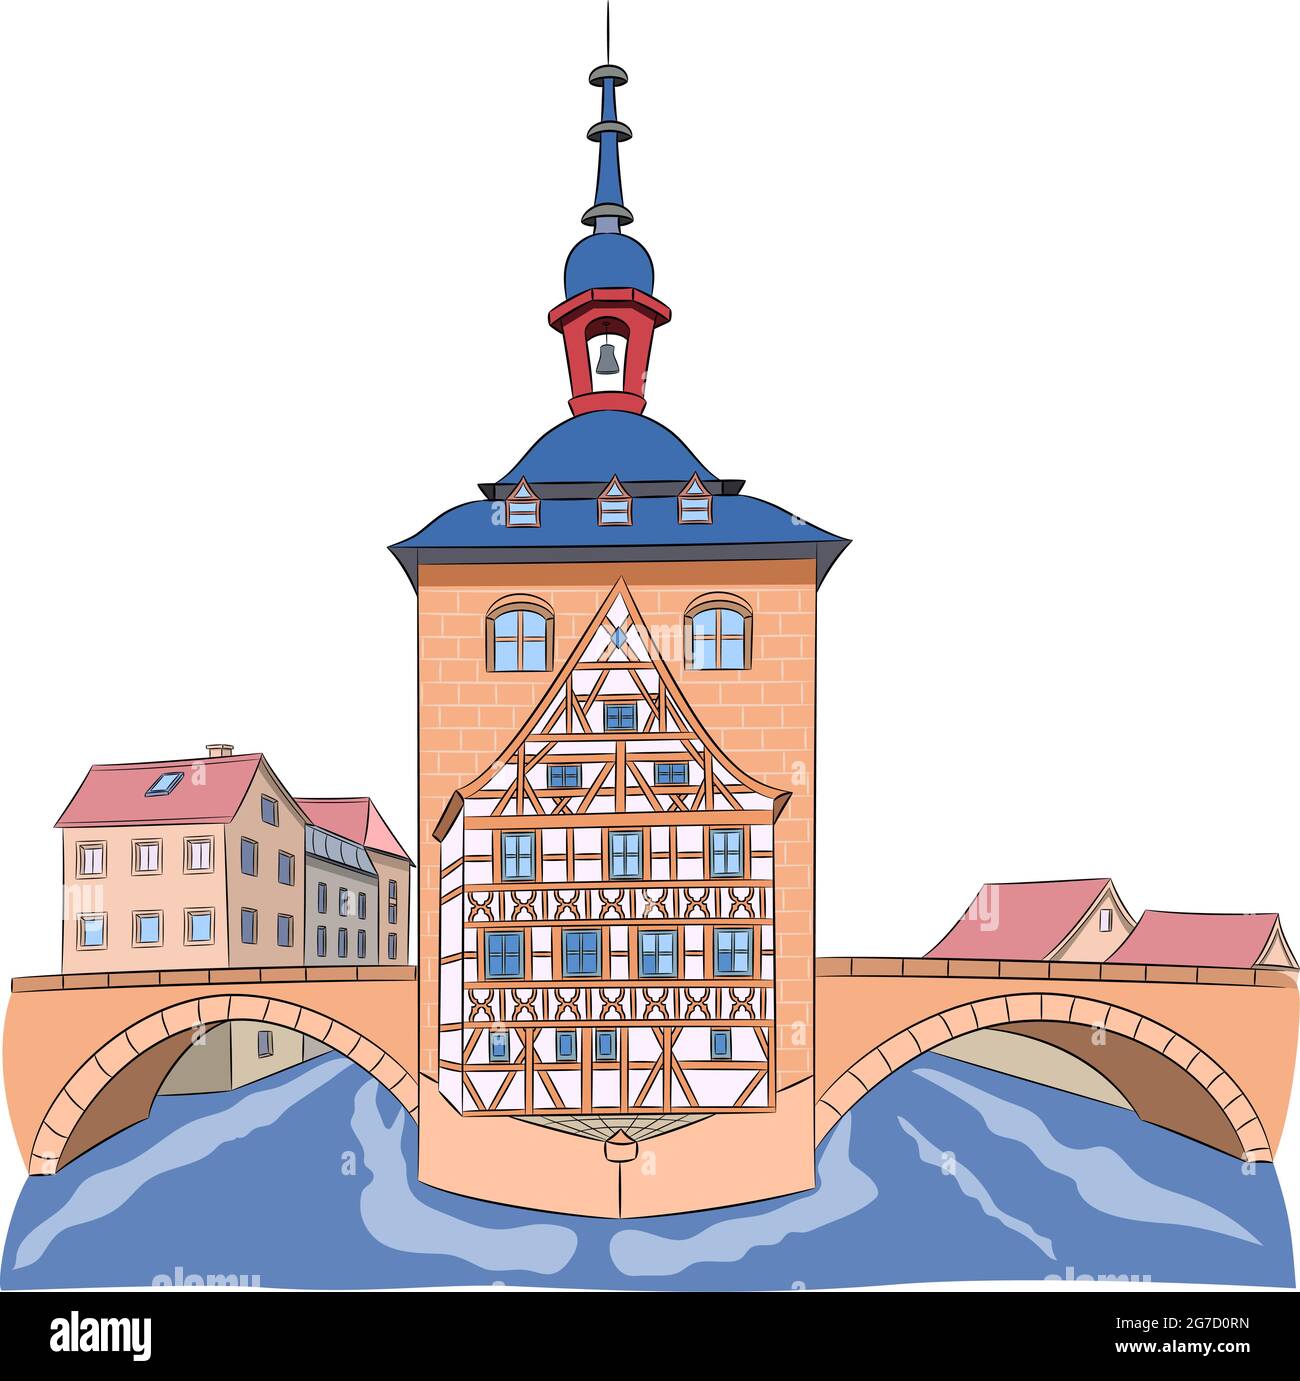 Le bâtiment de l'ancienne mairie médiévale sur le pont au-dessus de la rivière. Bamberg. Bavière Allemagne. Illustration de Vecteur